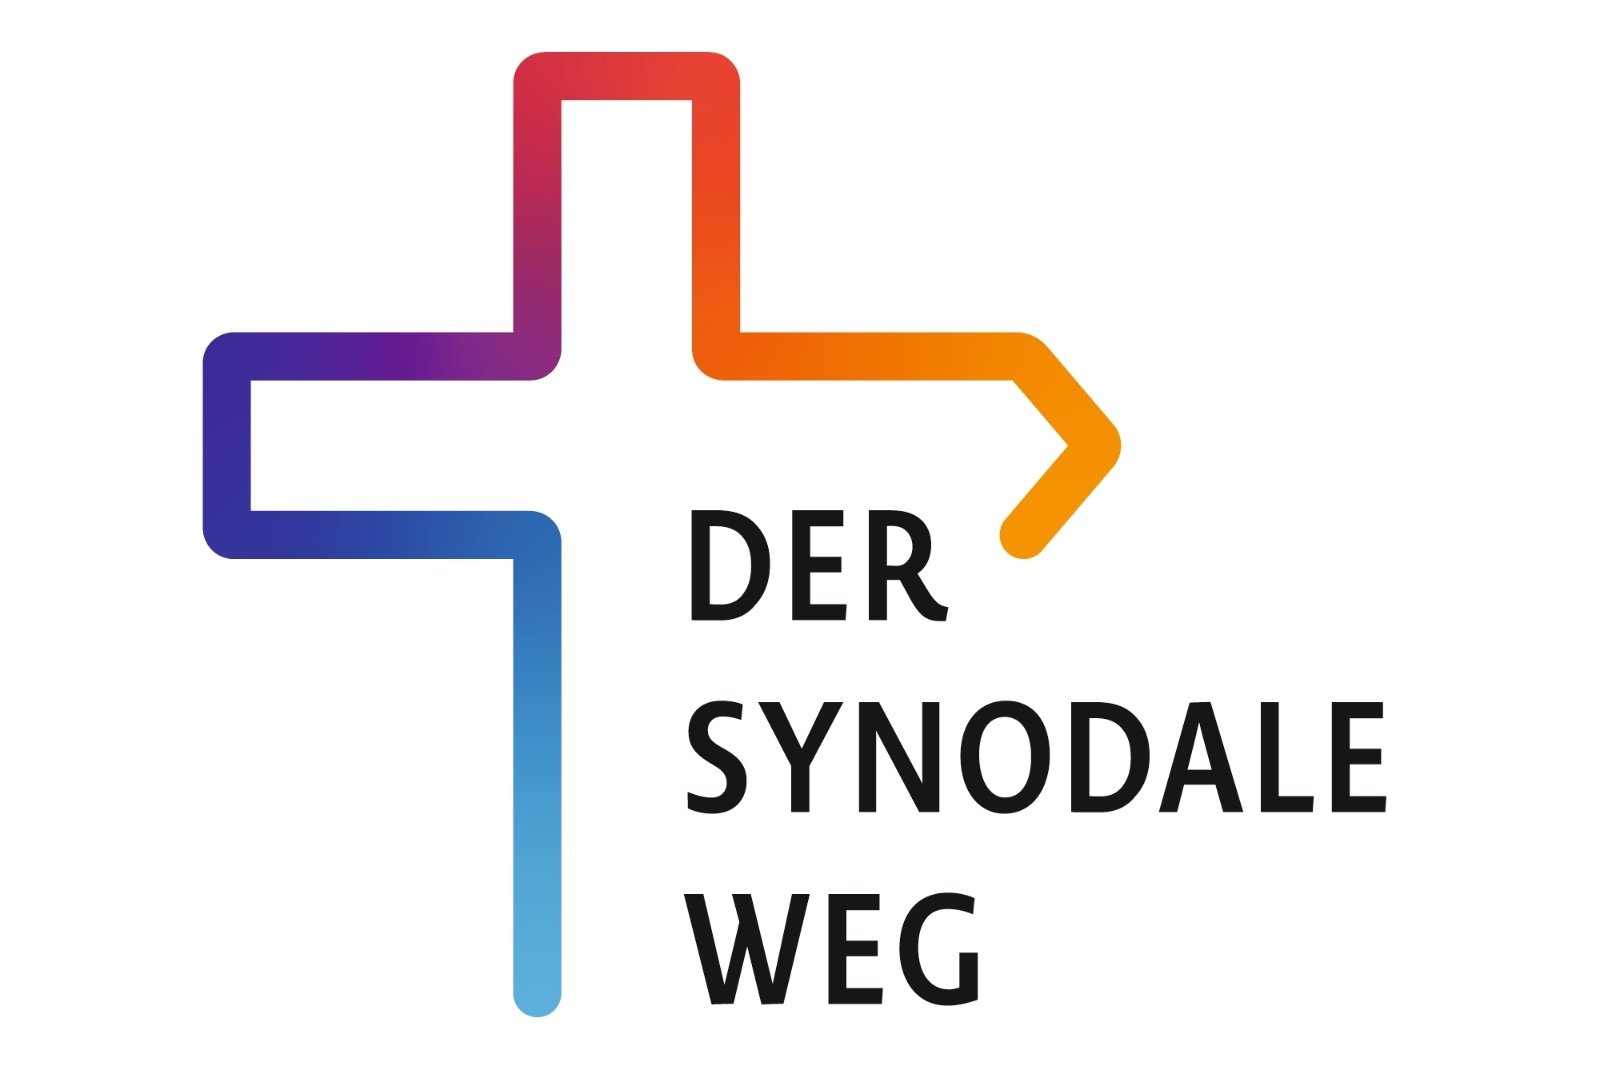 Der Synodale Weg (c) Deutsche Bischofskonferenz